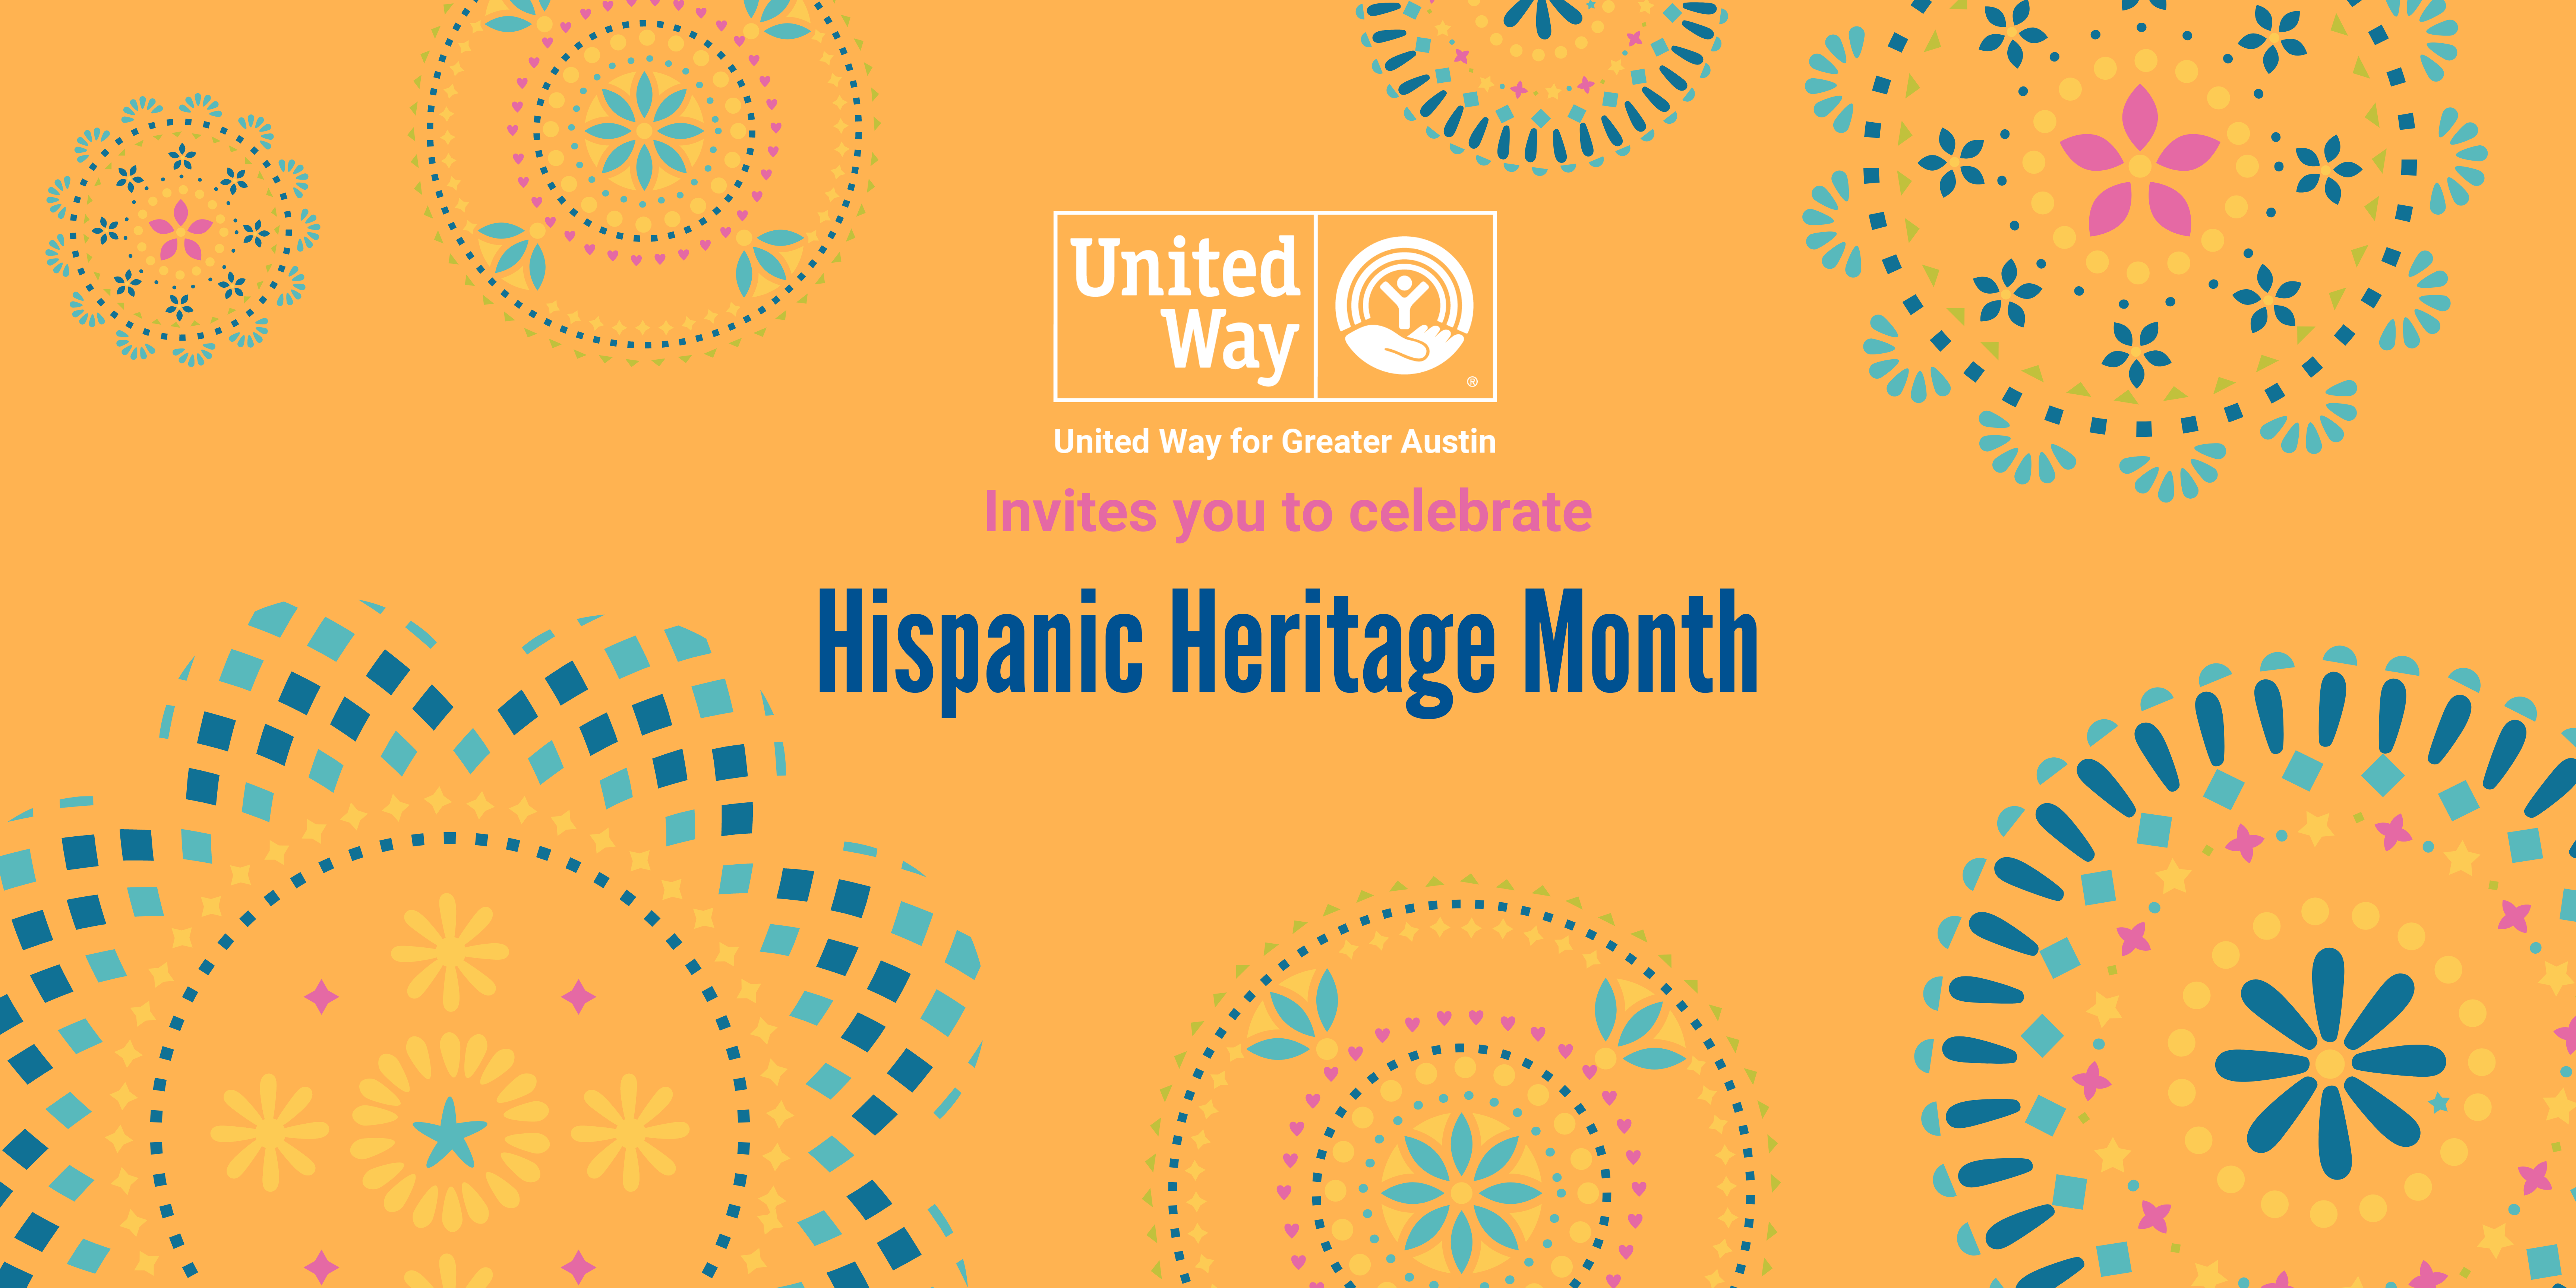 Hispanic Heritage Month: How we celebrate united